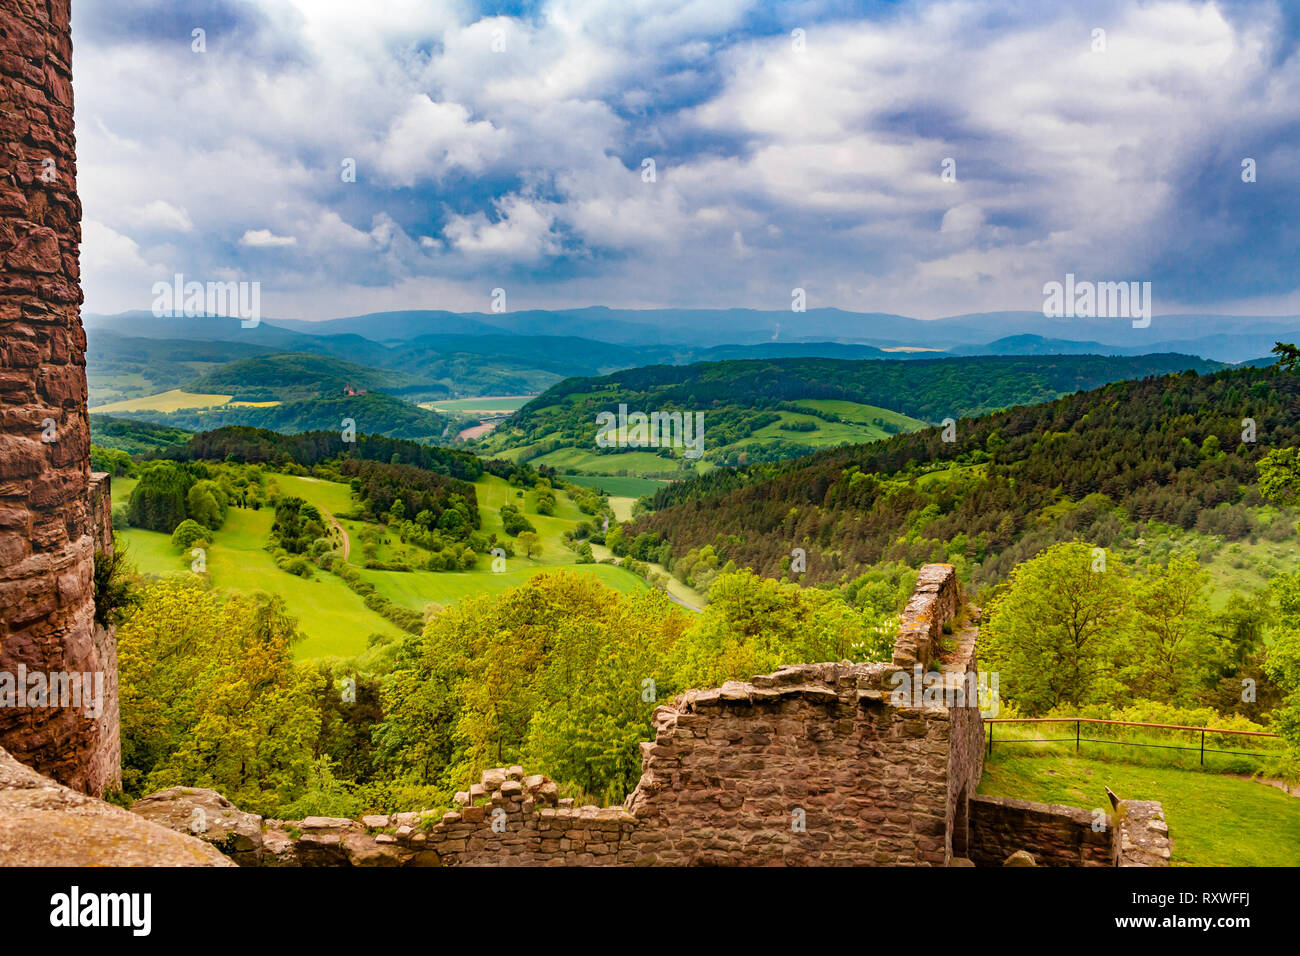 Fantastica vista della Valle Werra e l'Assia bassa montagna dal versante sud-occidentale del castello Hanstein, un castello in rovina in Germania centrale... Foto Stock